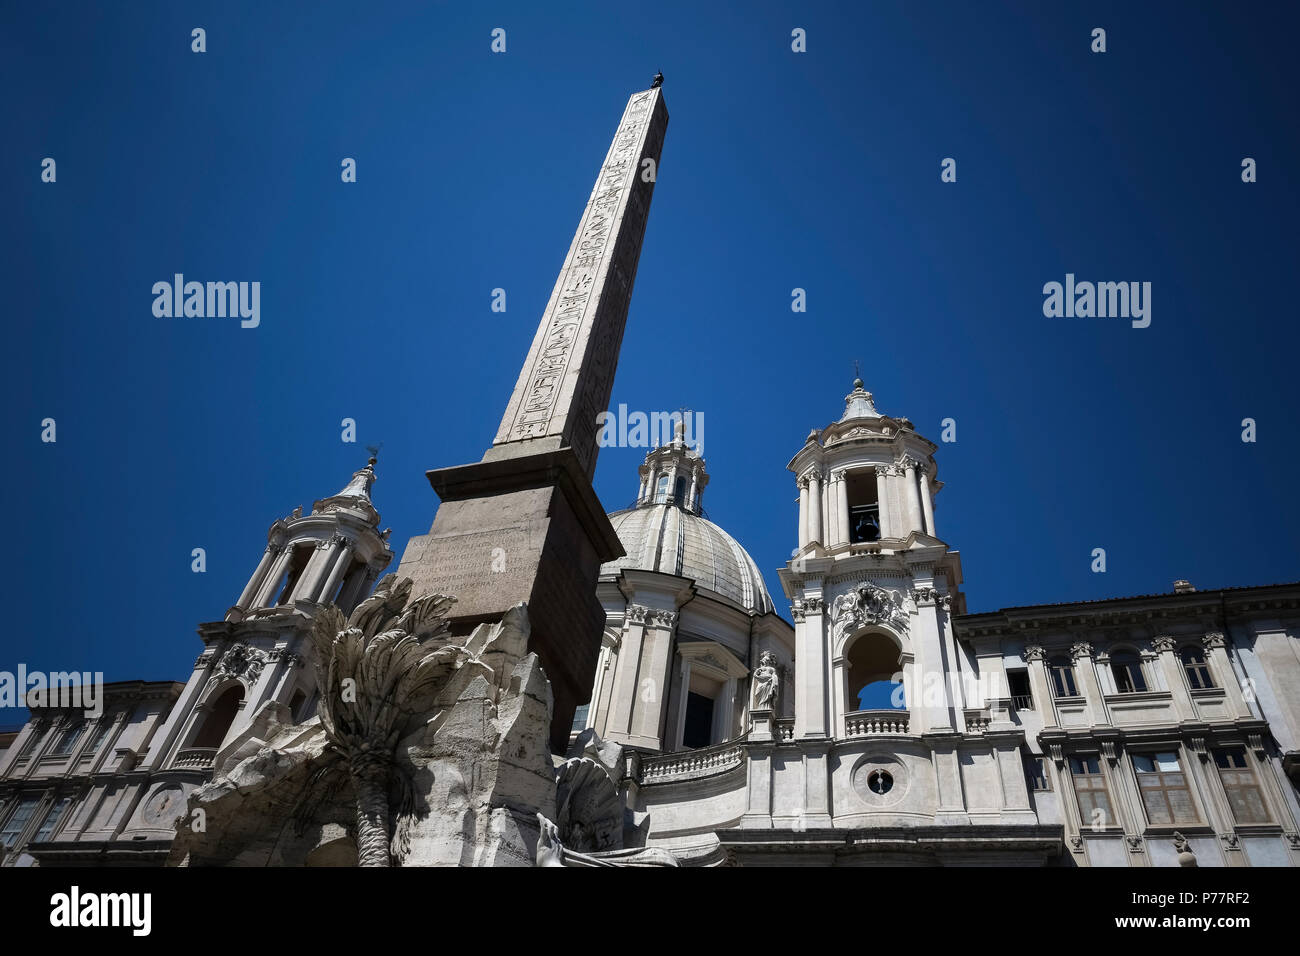 Piazza Navona Square, la fontaine des 4 rivières de Bernini et l'obélisque égyptien devant l'église Saint Agnese de Borromini. Rome, Italie, Europe, UE. Banque D'Images